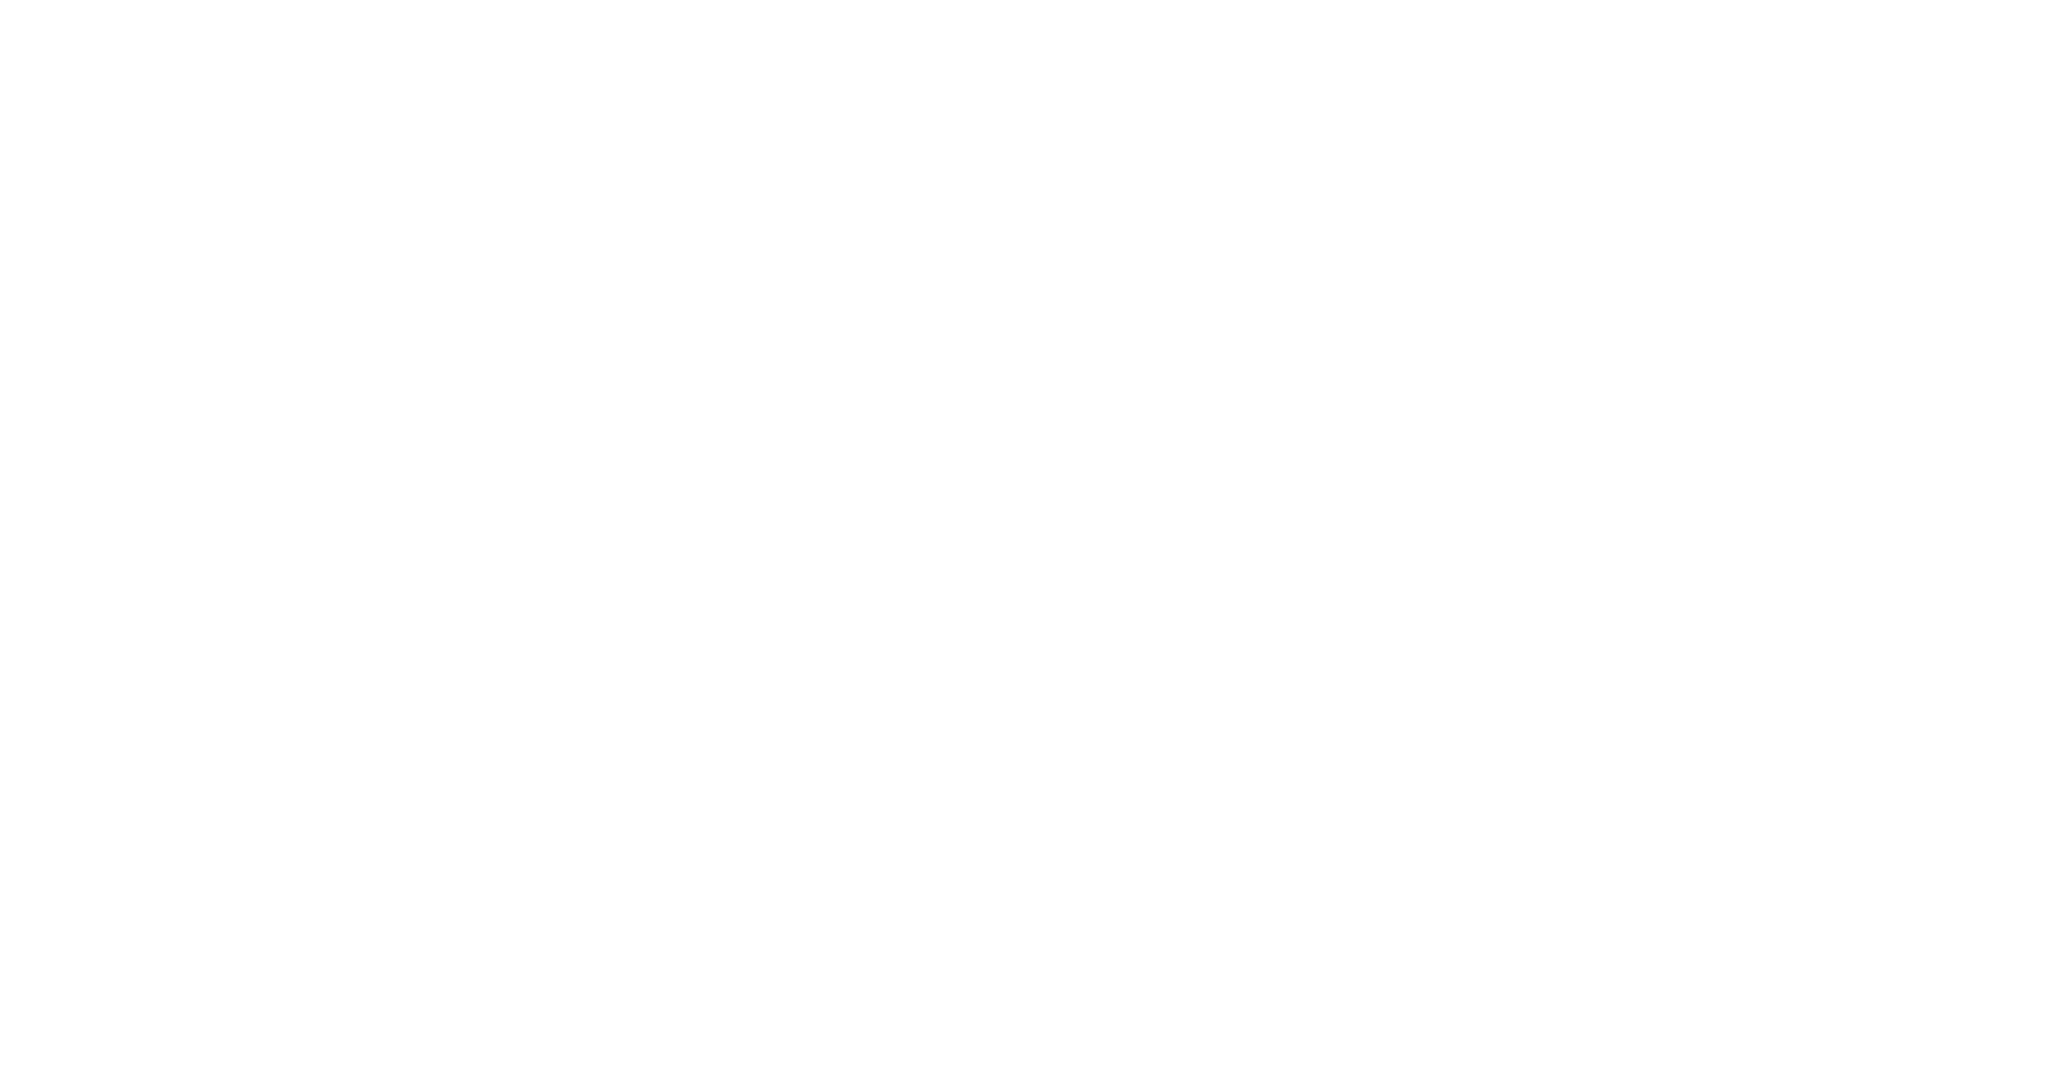 Itch Logo